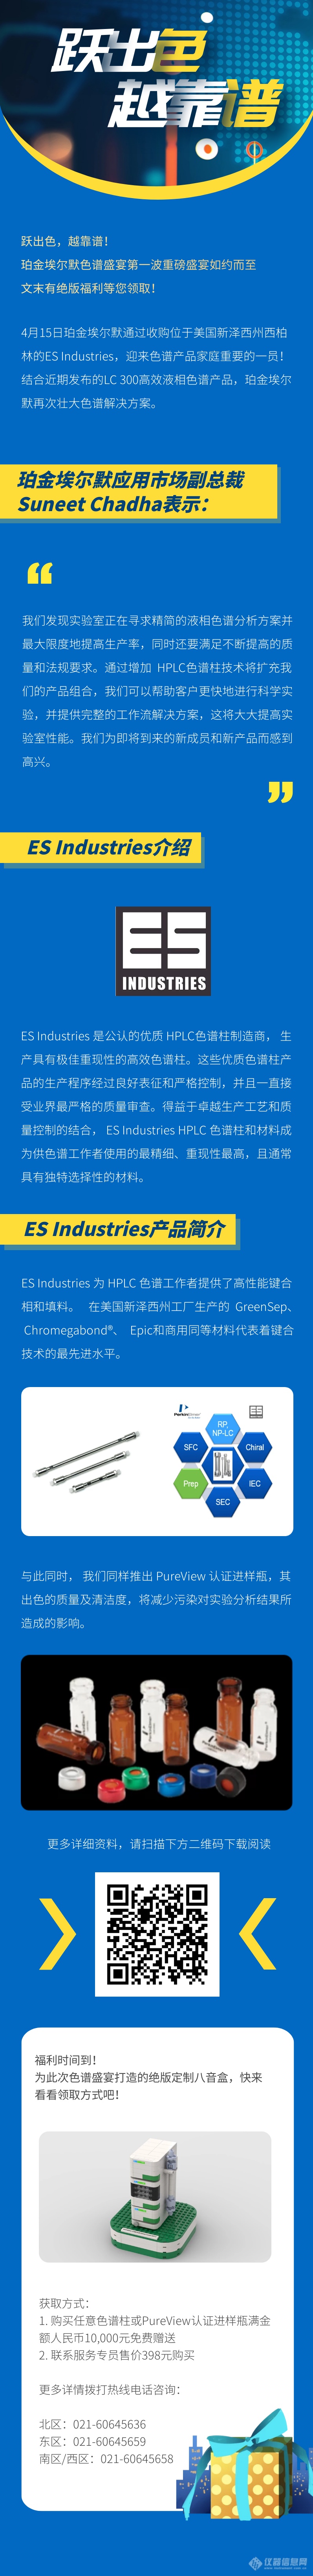 色谱产品家庭迎来重磅成员ES Industries